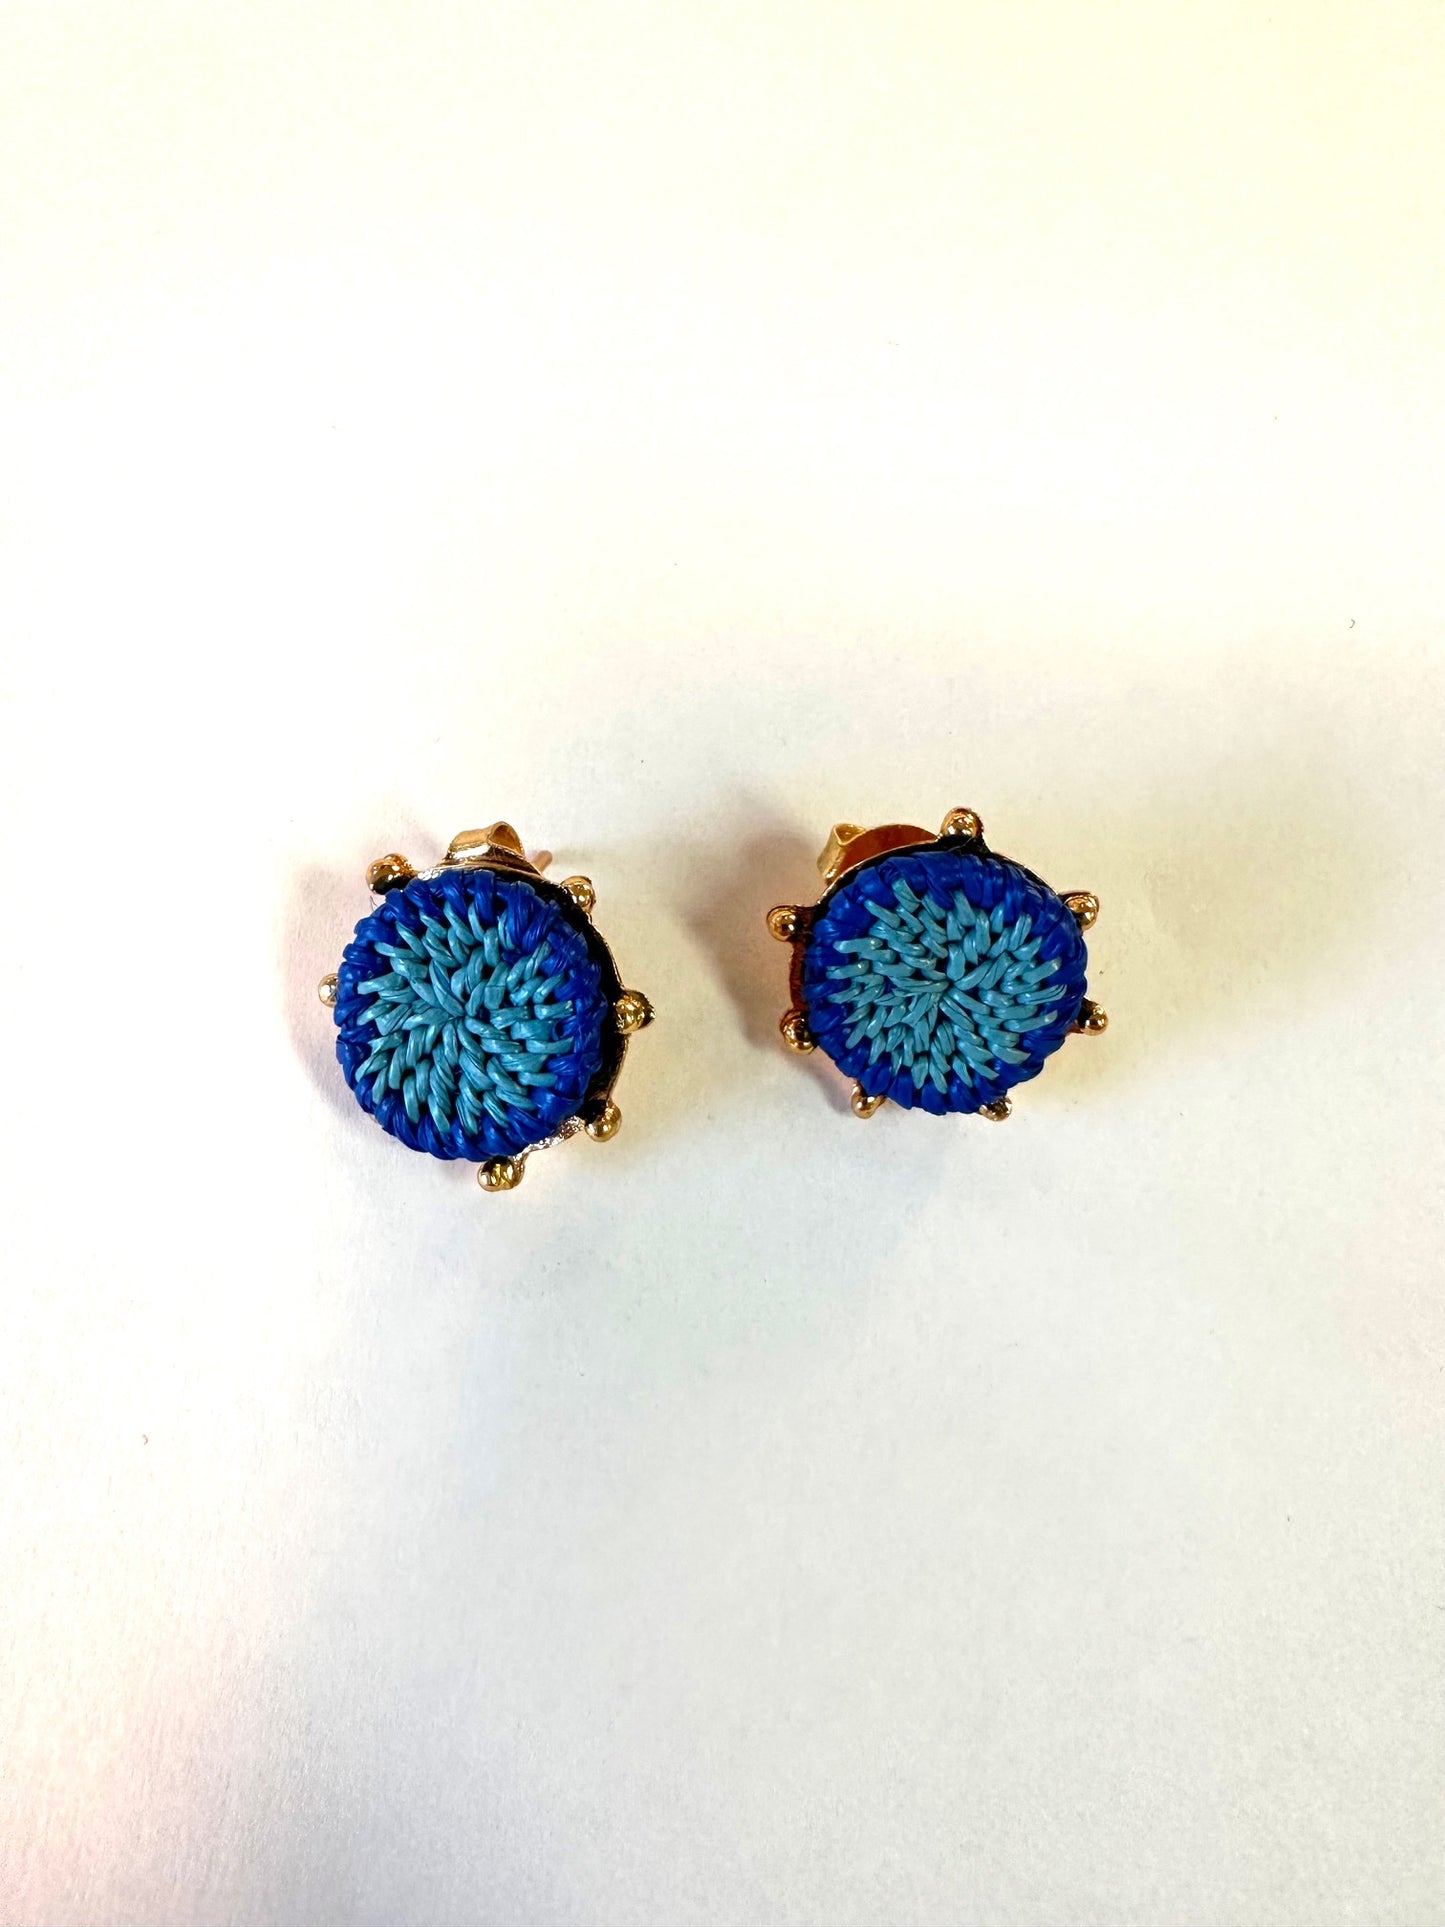 Elizabetta Earrings in blue turquoise by Bamboleira